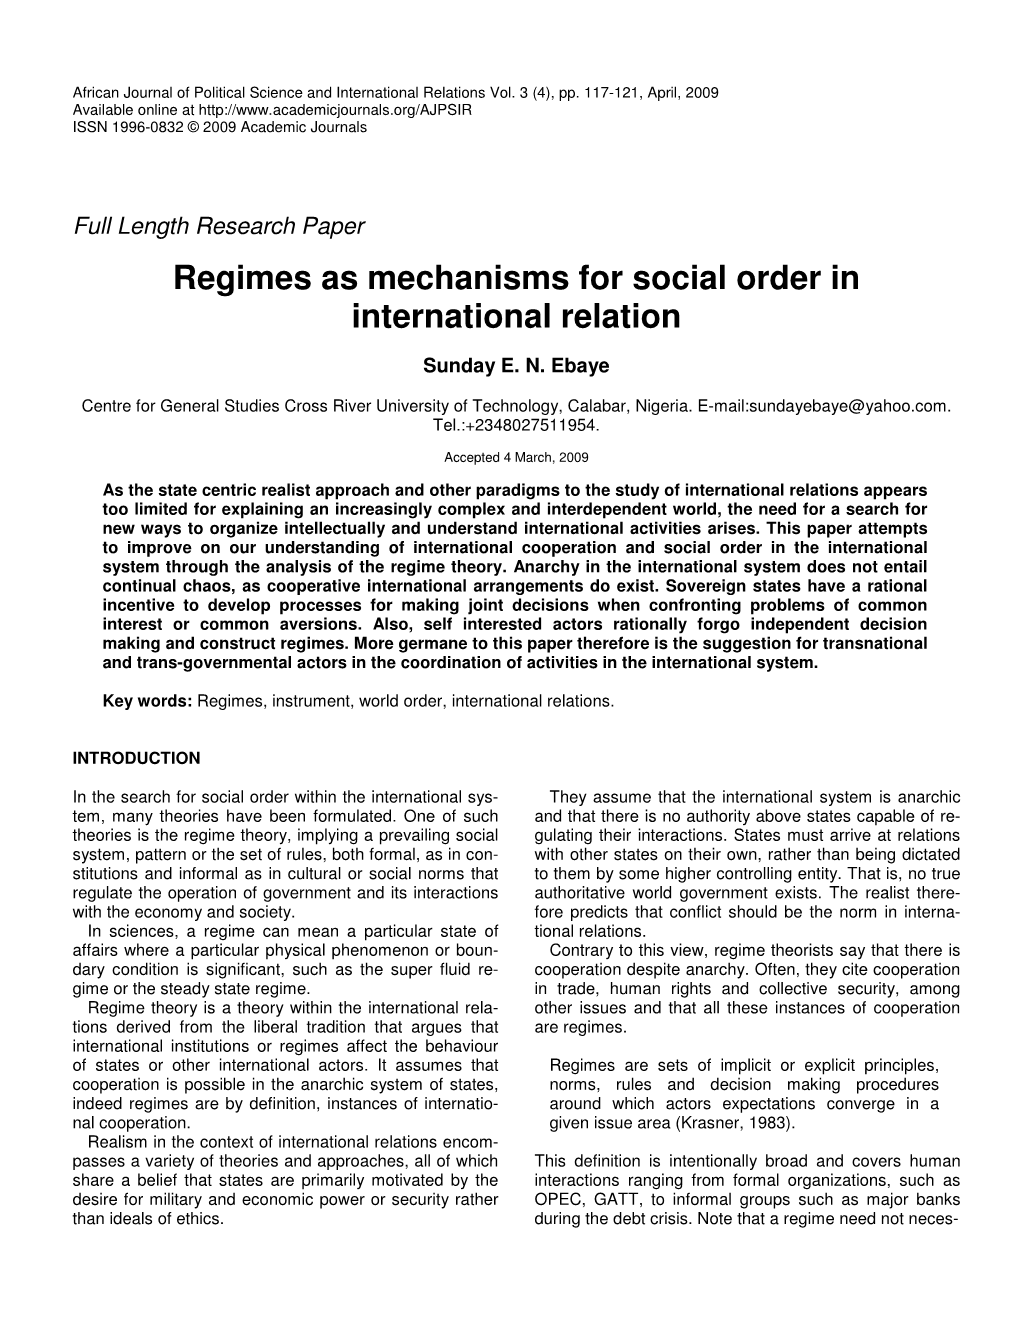 Regimes As Mechanisms for Social Order in International Relation